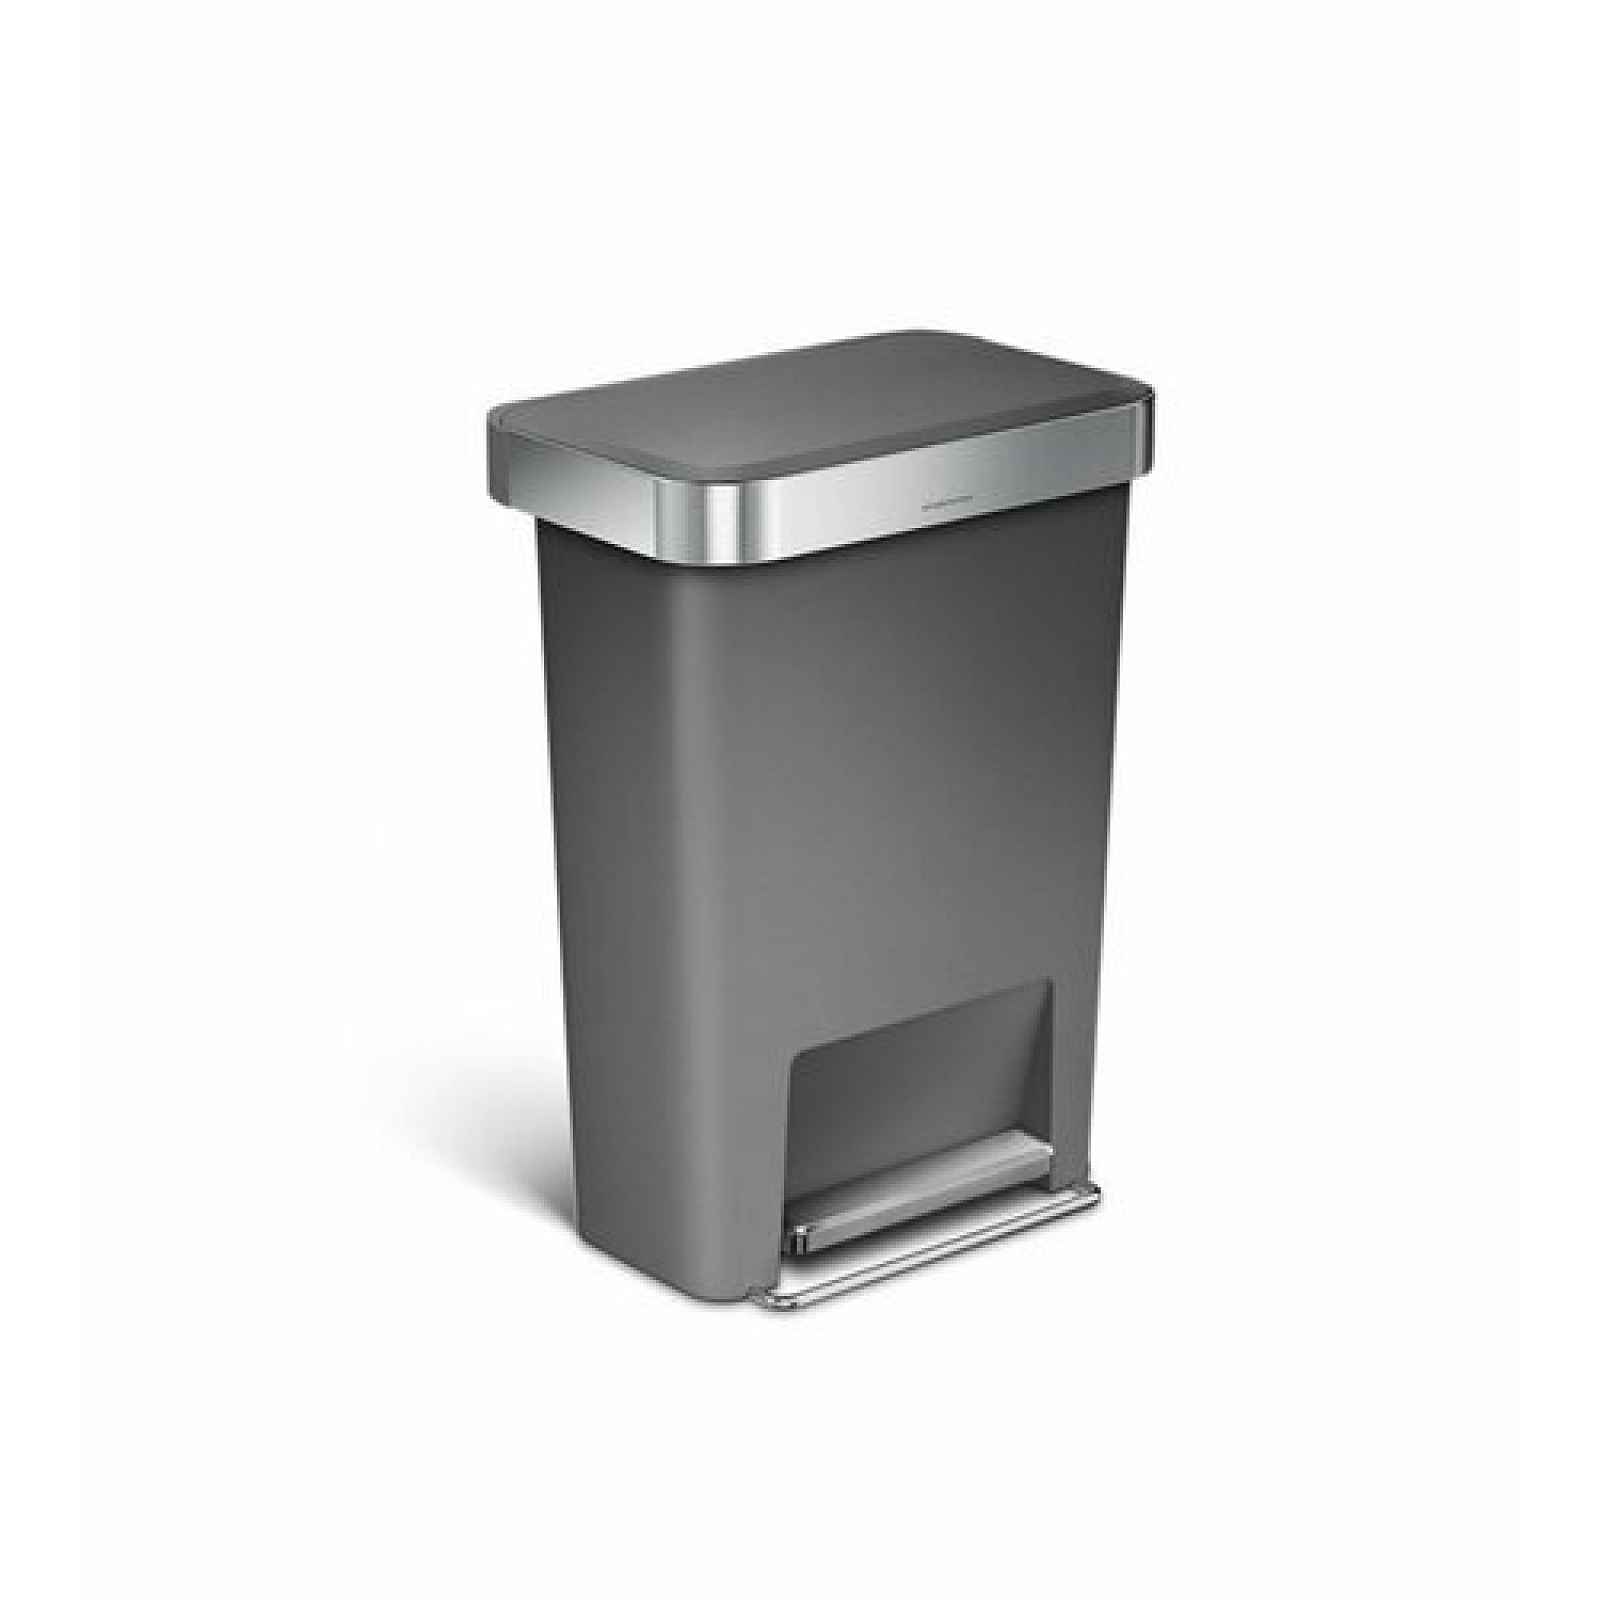 Pedálový odpadkový koš Simplehuman – 45 l, kapsa na sáčky, obdélníkový, šedý plast / nerez